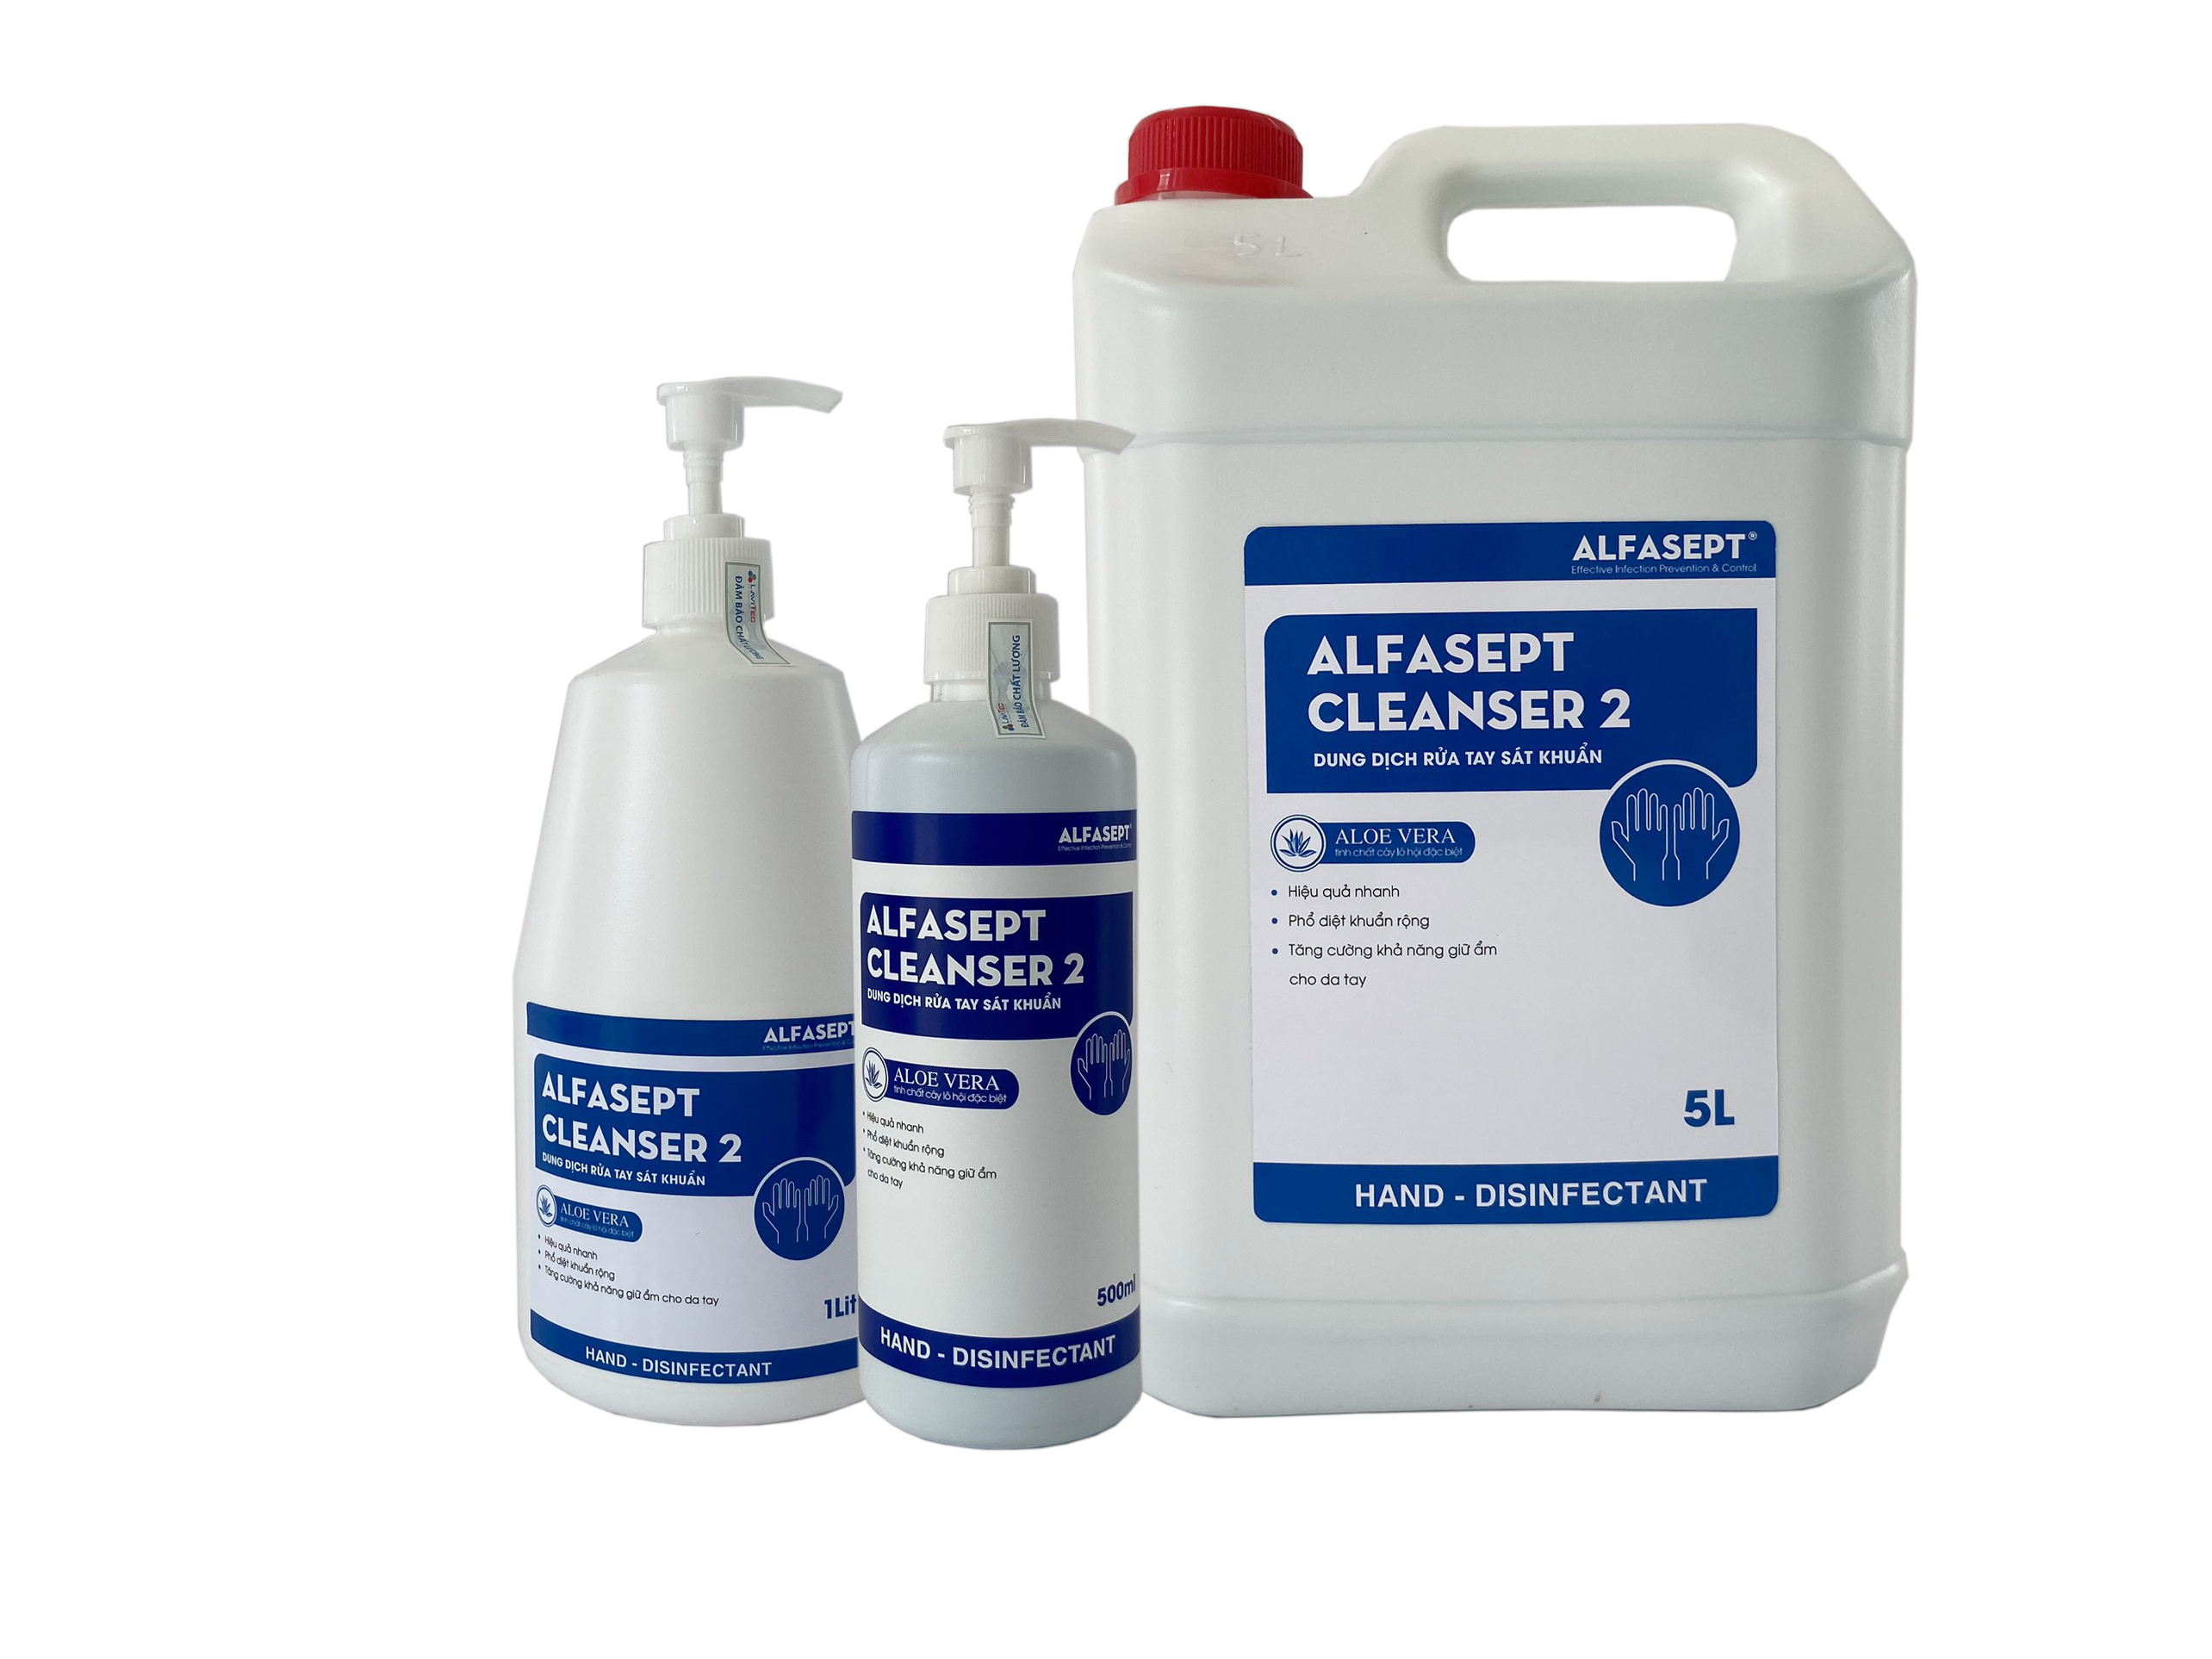 Xà phòng khử khuẩn vệ sinh tay ALFASEPT Cleanser 2 - Bảo vệ gia đình bạn khỏi các vi khuẩn gây hại